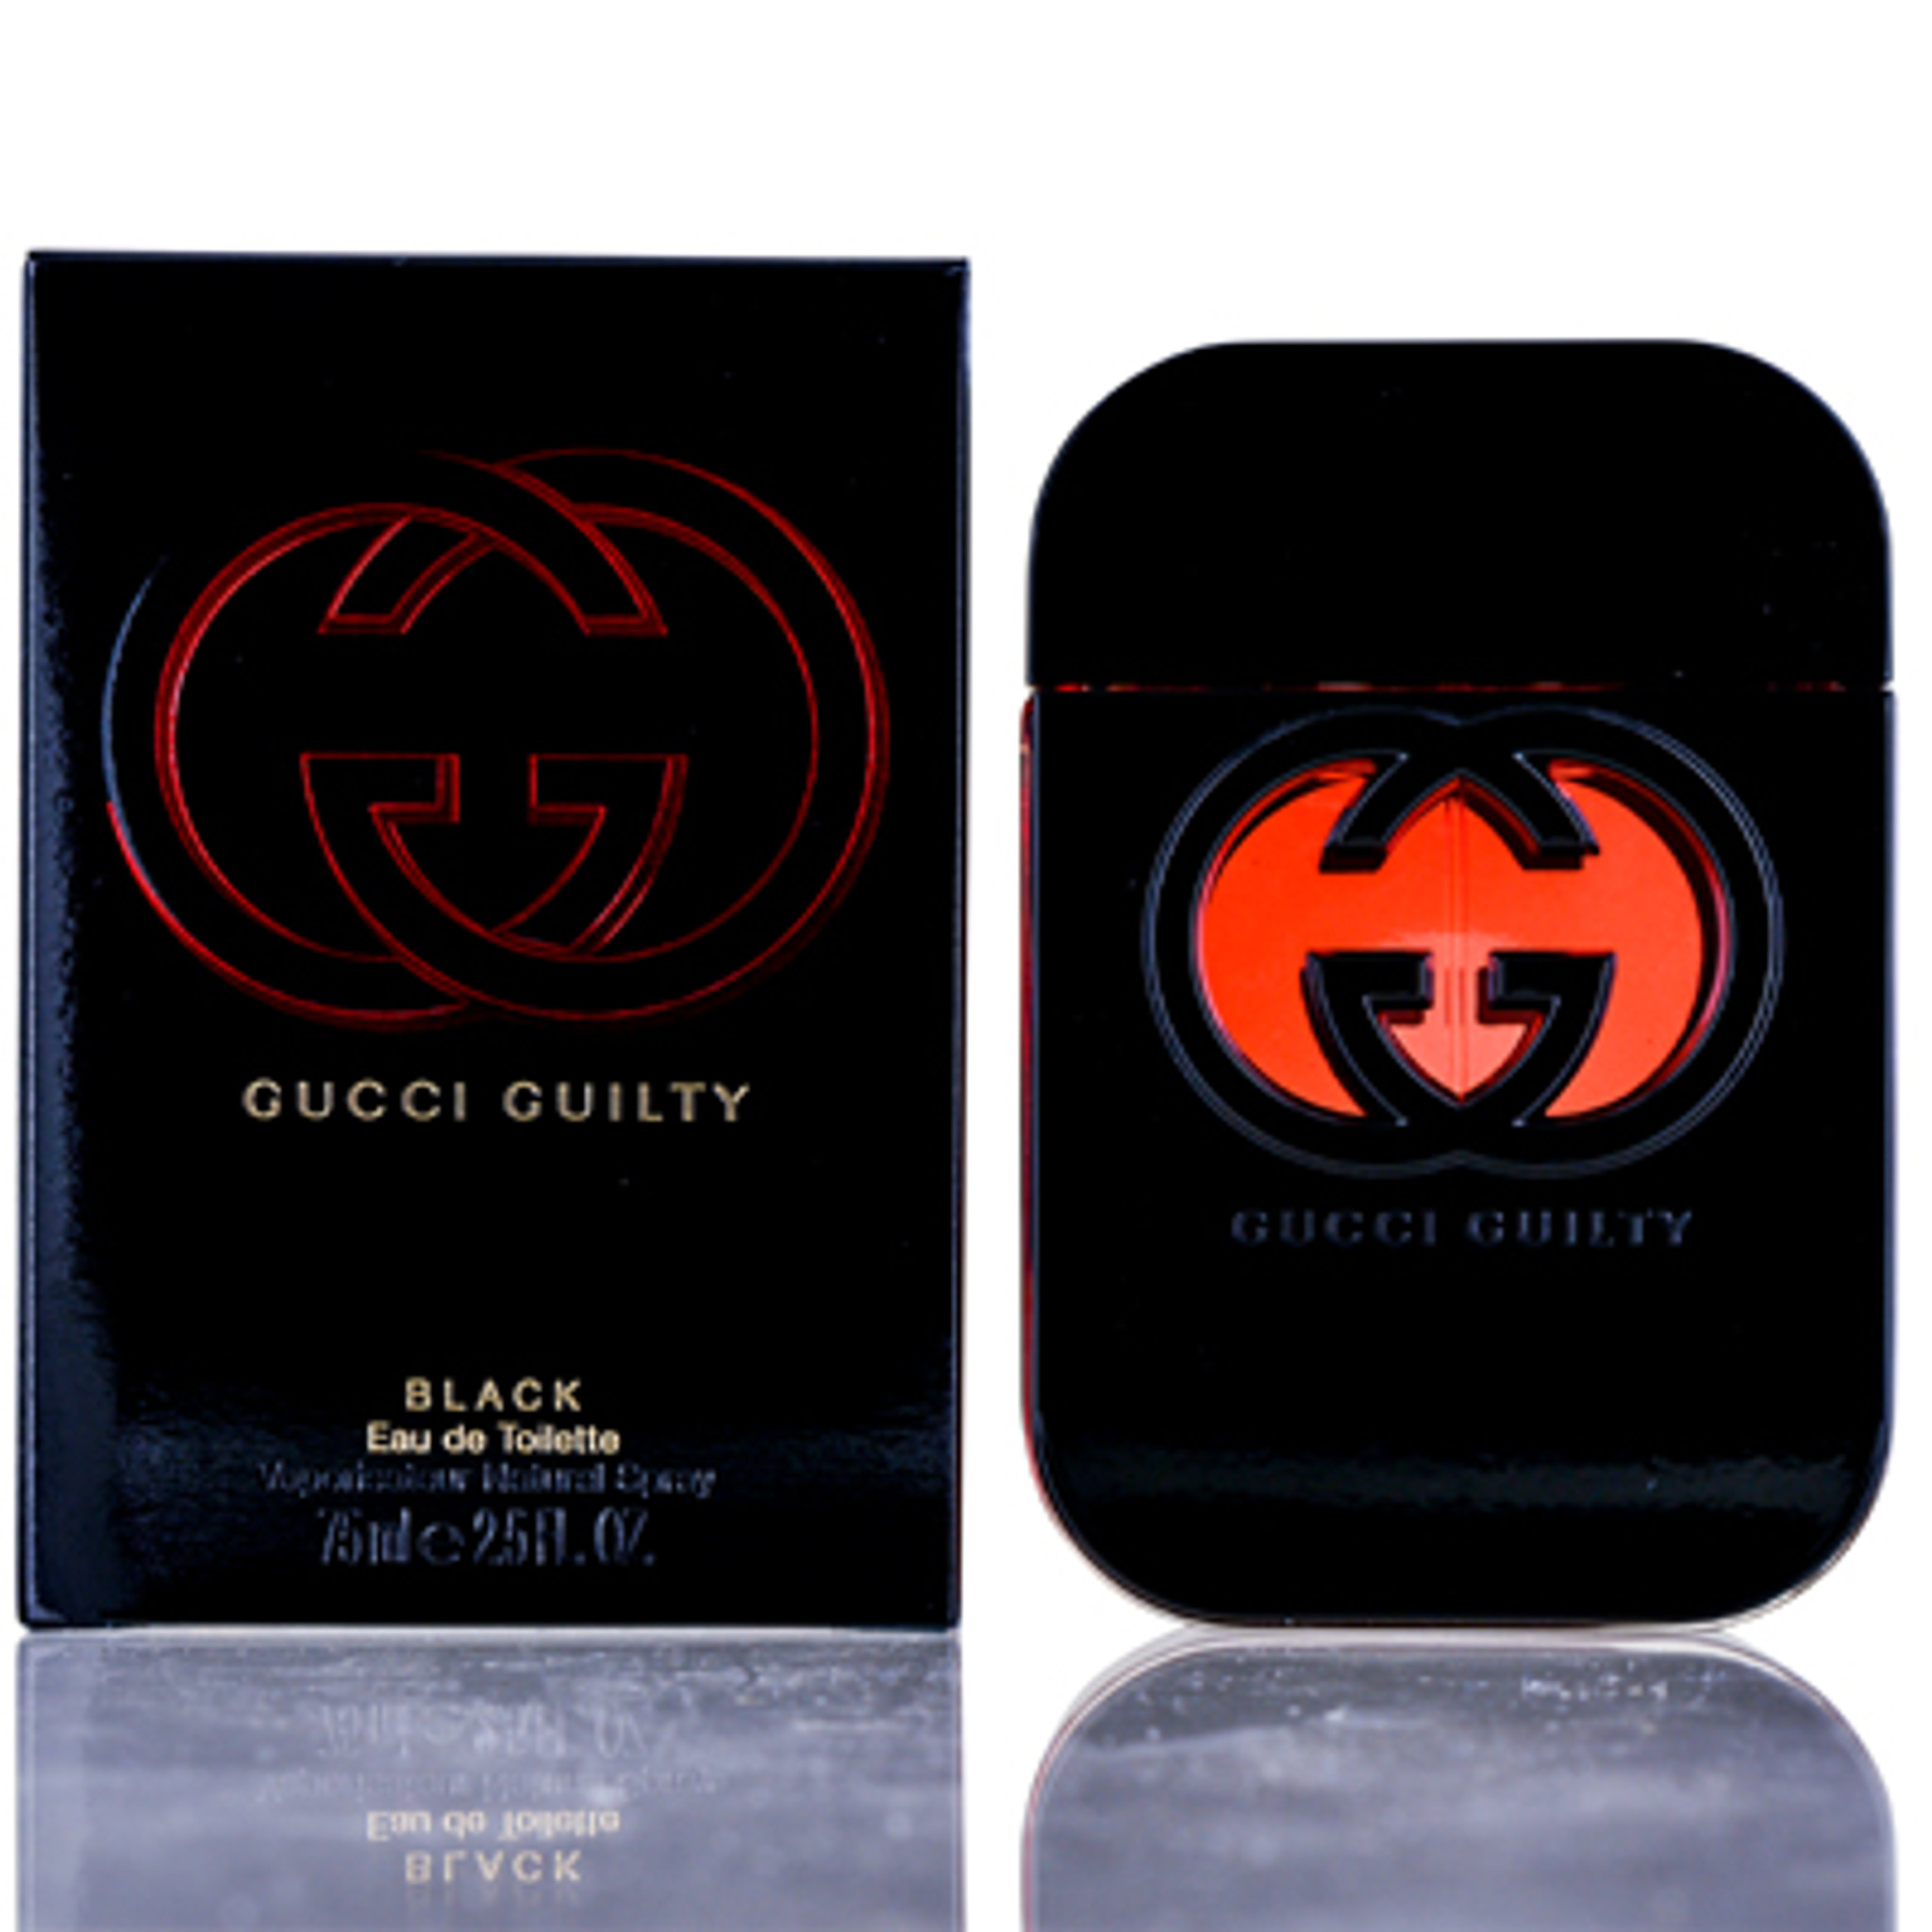 Gucci Guilty Platinum Eau De Toilette, Perfume for Women, 2.5 Oz 